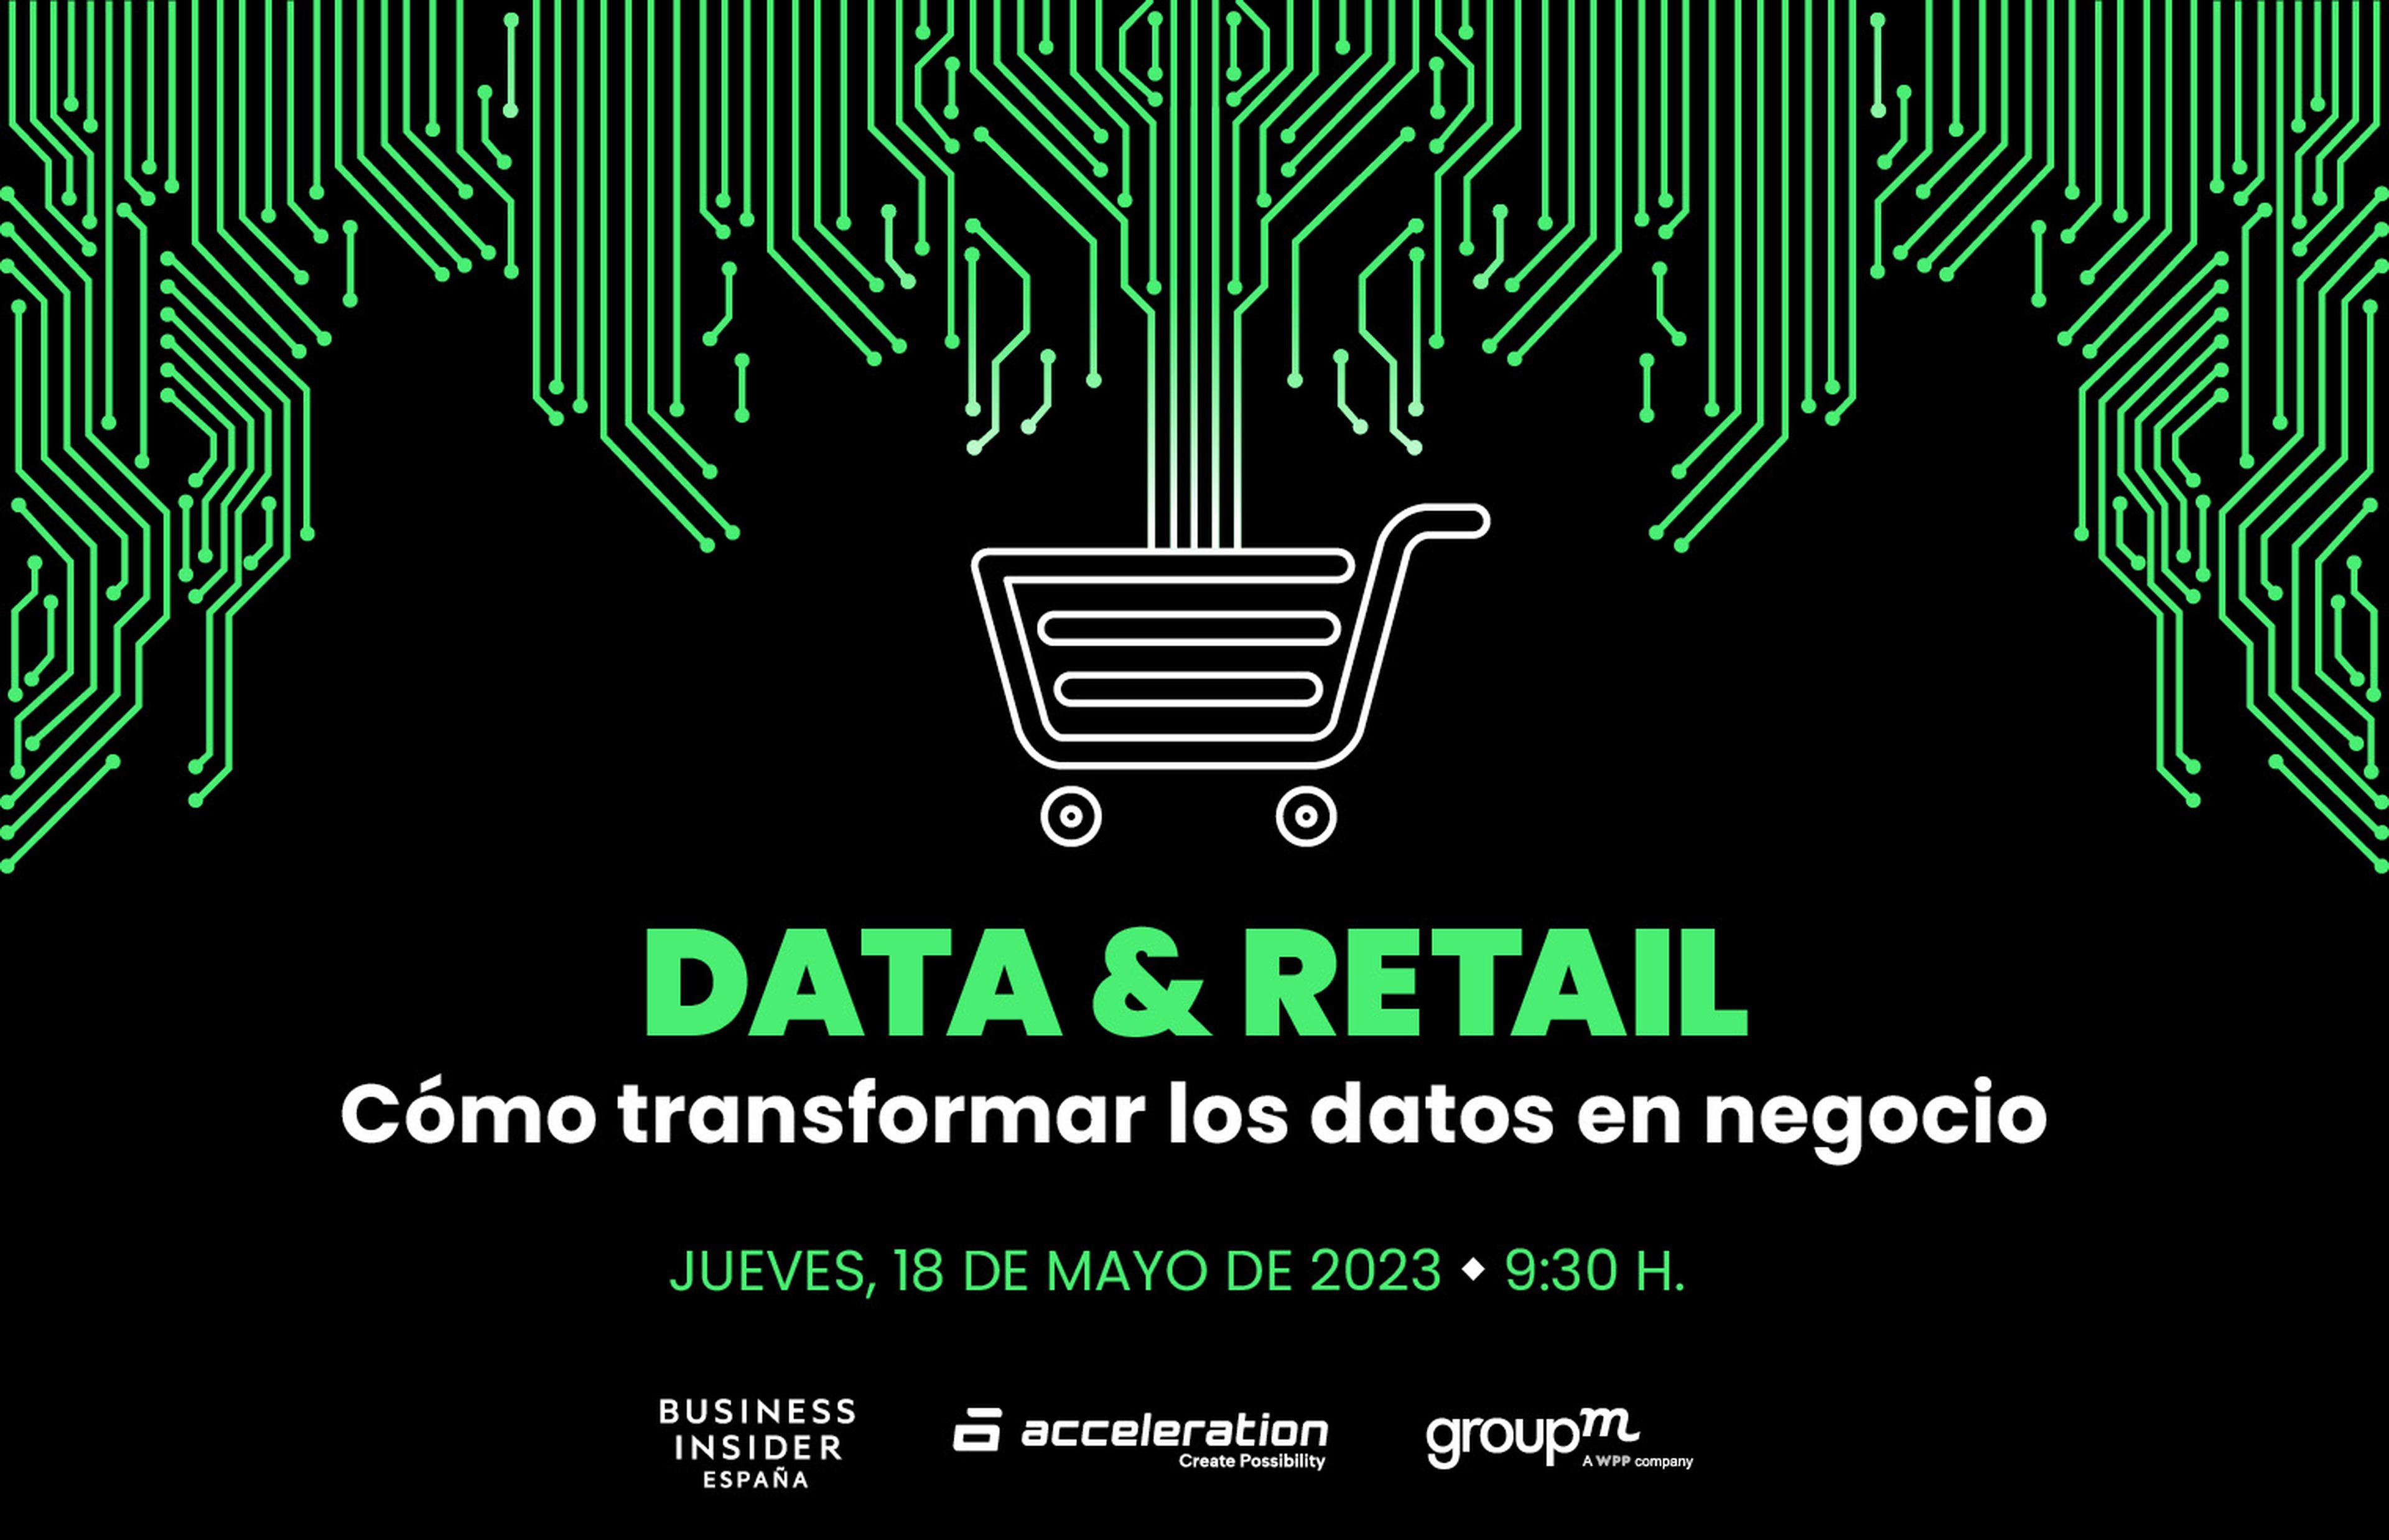 GroupM - Cómo Transformar los datos en negocio